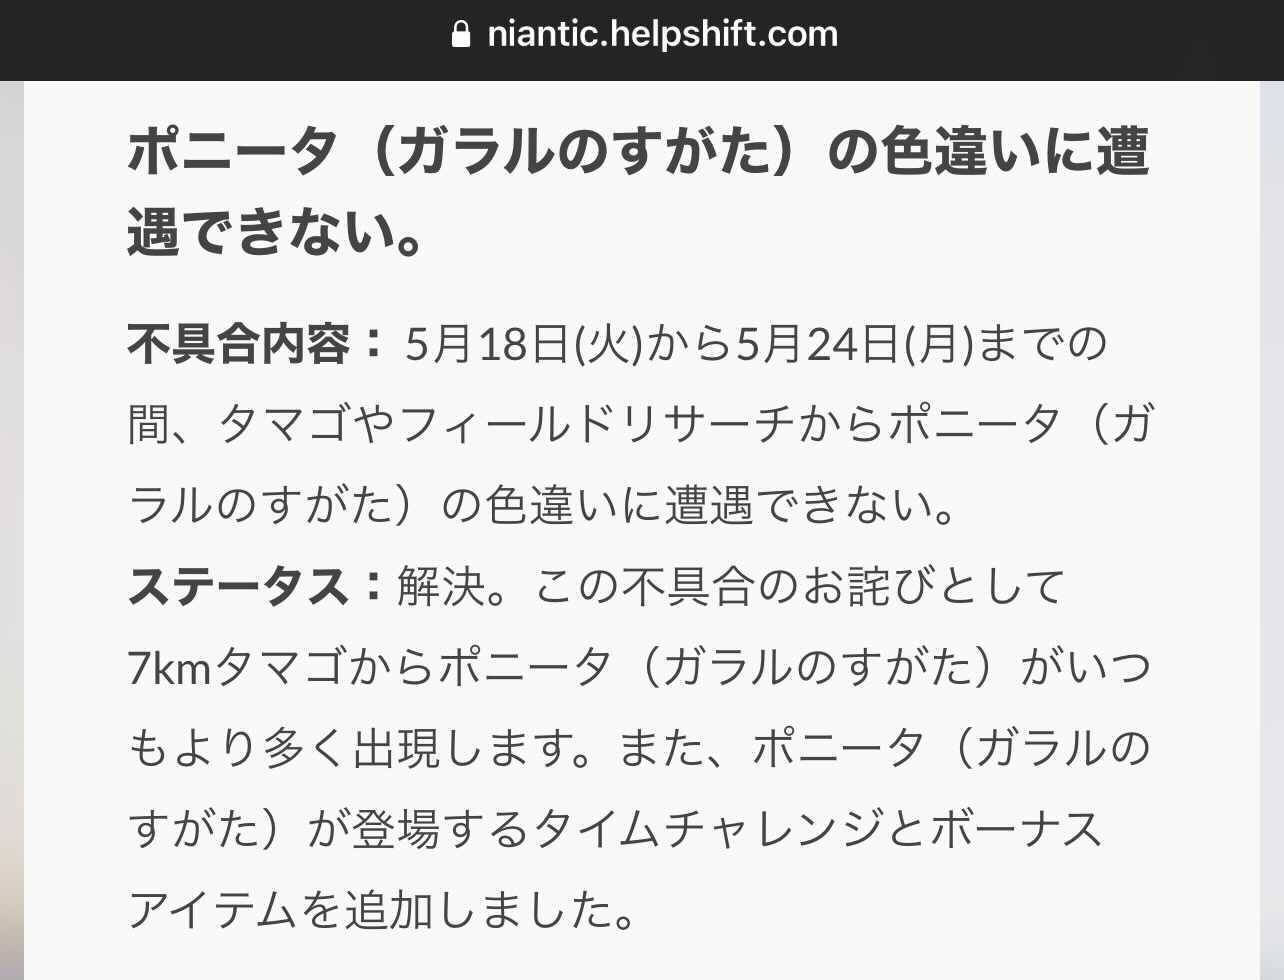 ポケモンgo 色違いガラルポニータの不具合で 詫びリサーチ を配信 6月8日まで Engadget 日本版